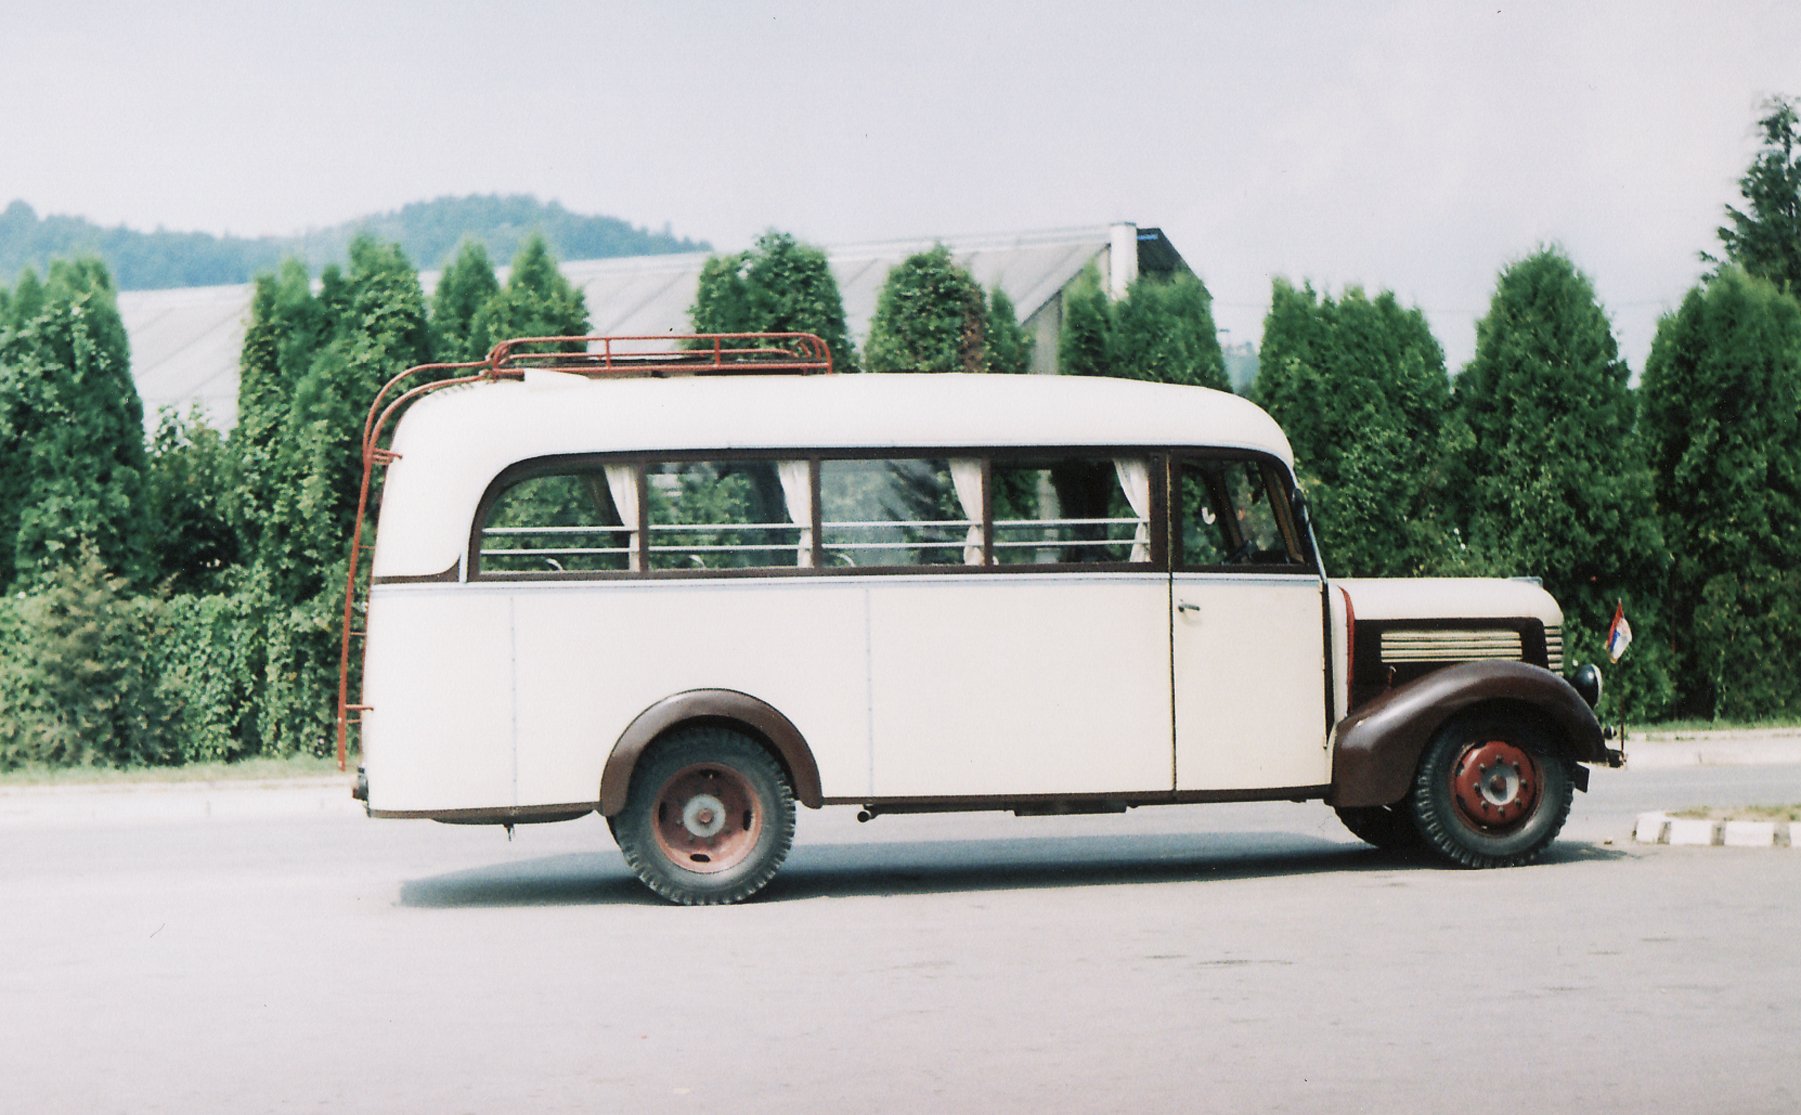  Gypsy Van in Serbia 